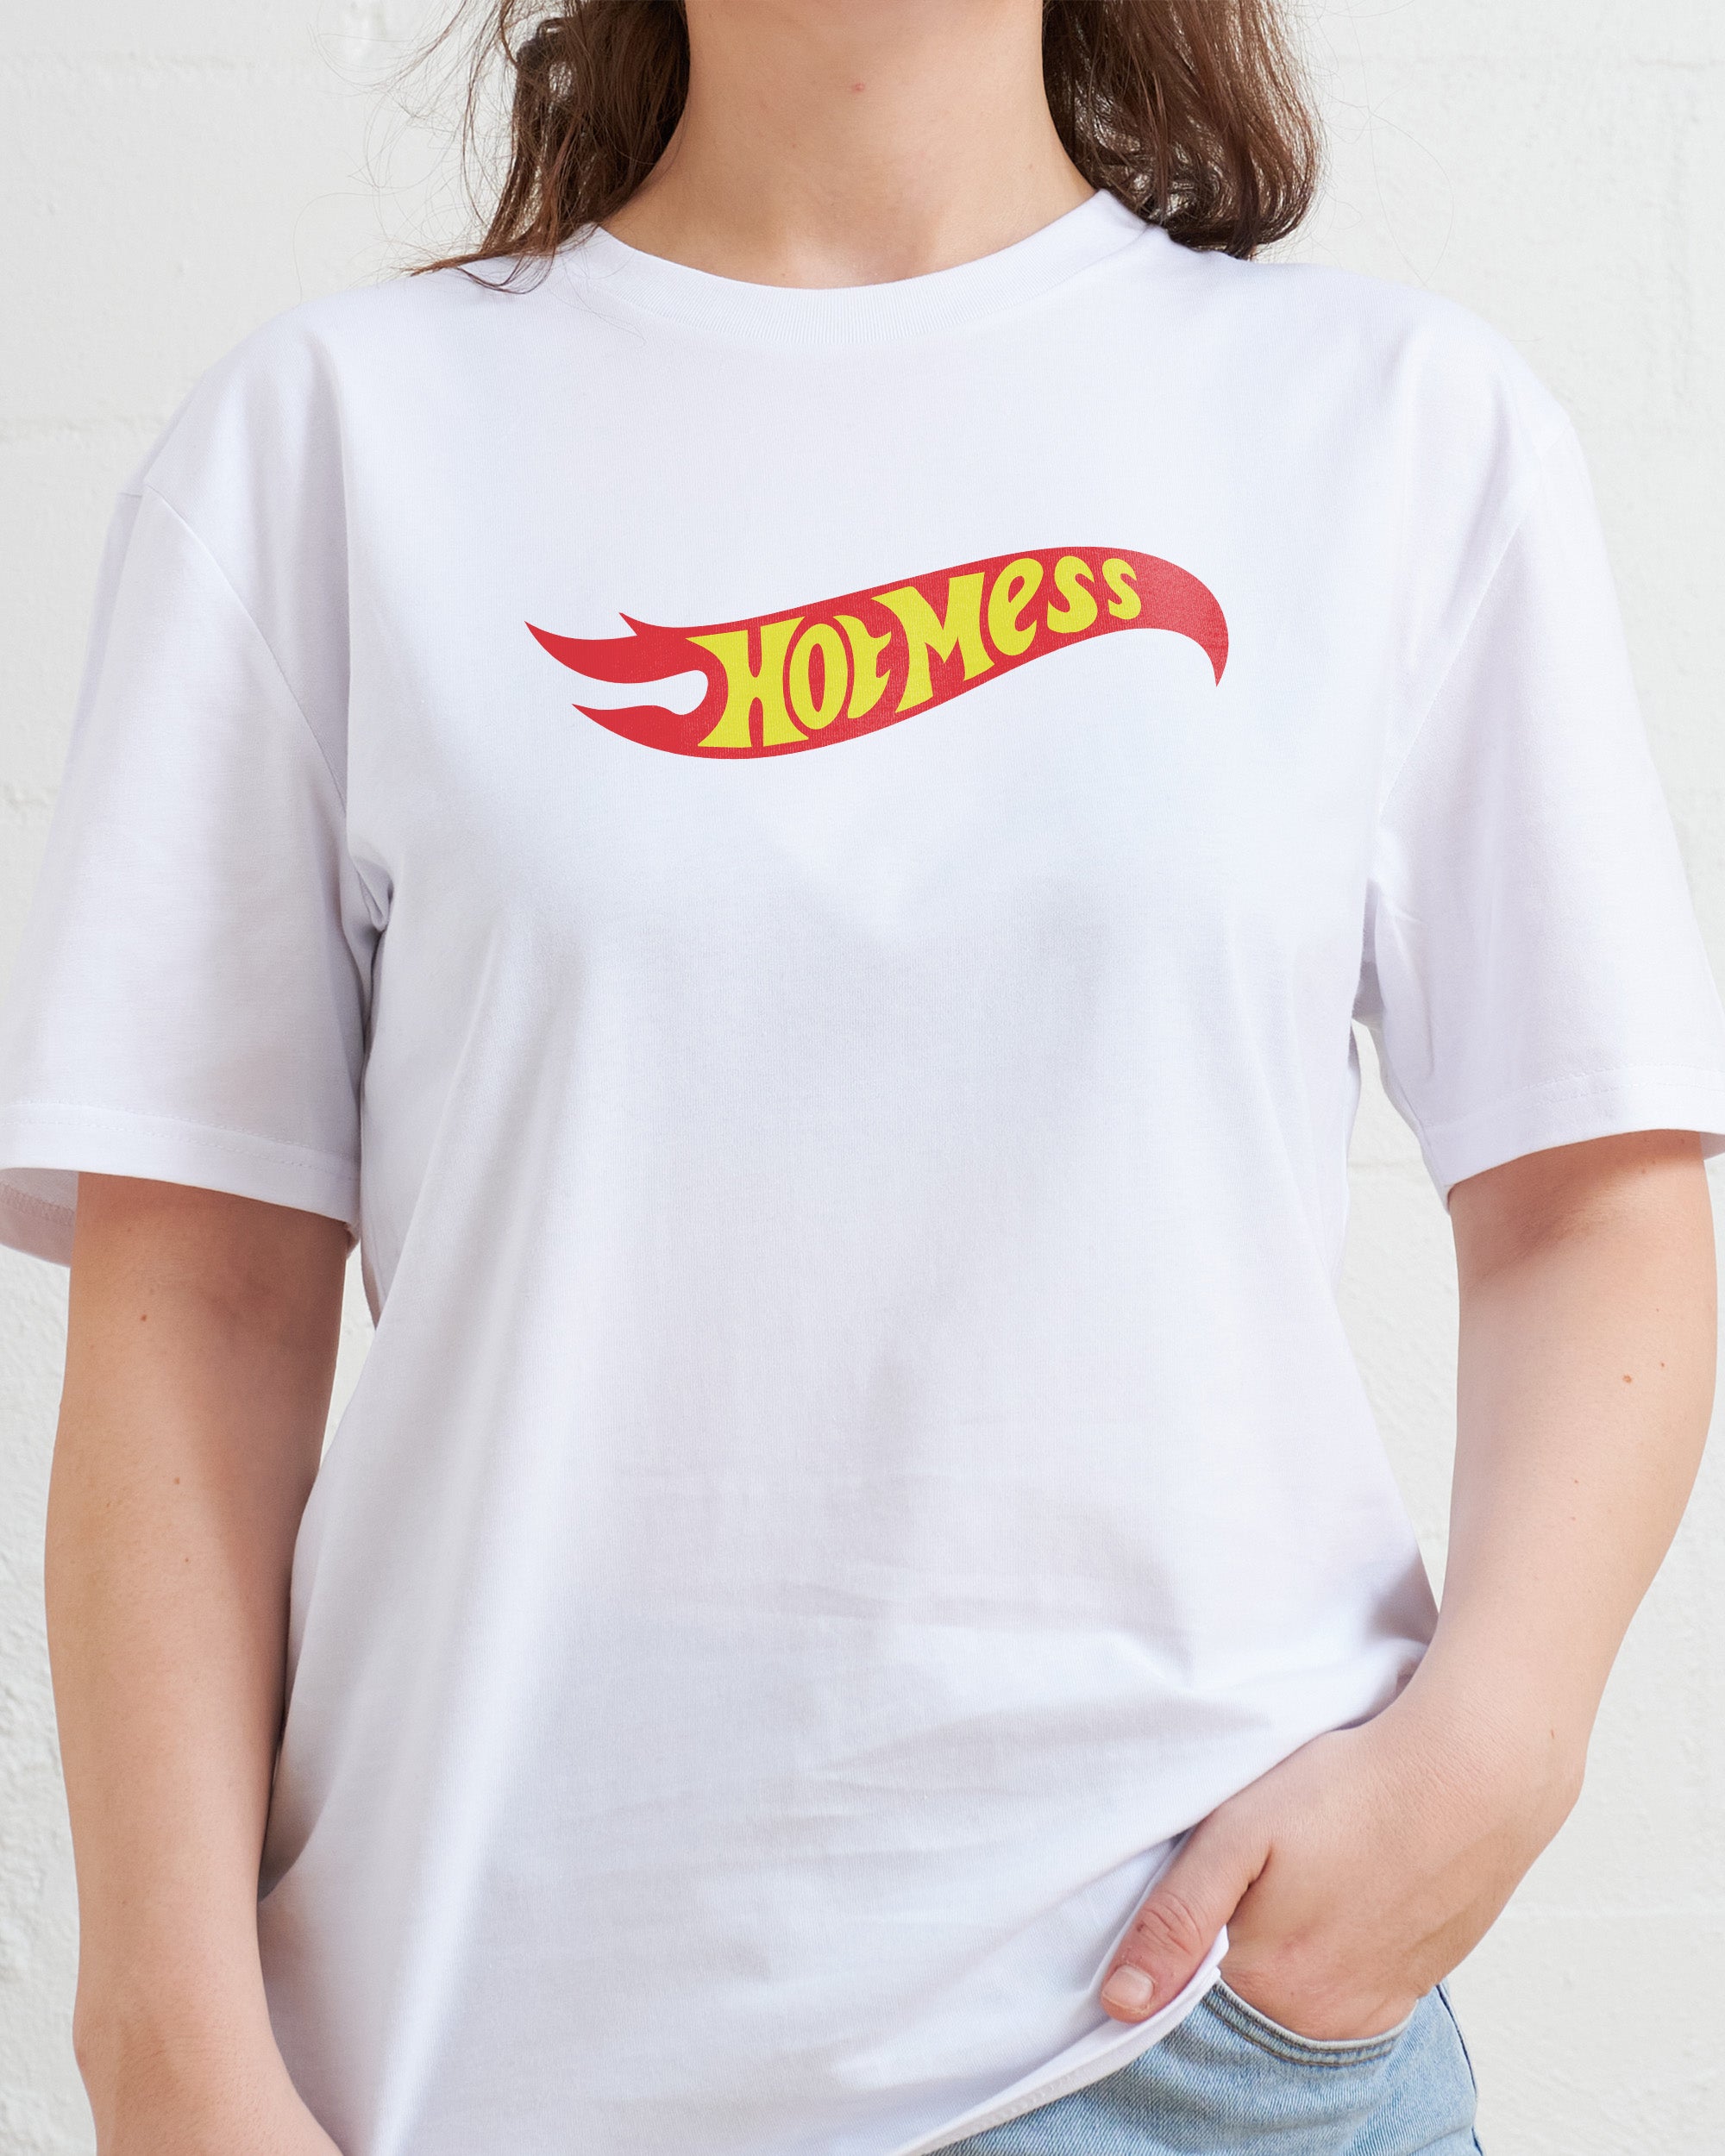 Hot Mess T-Shirt Australia Online